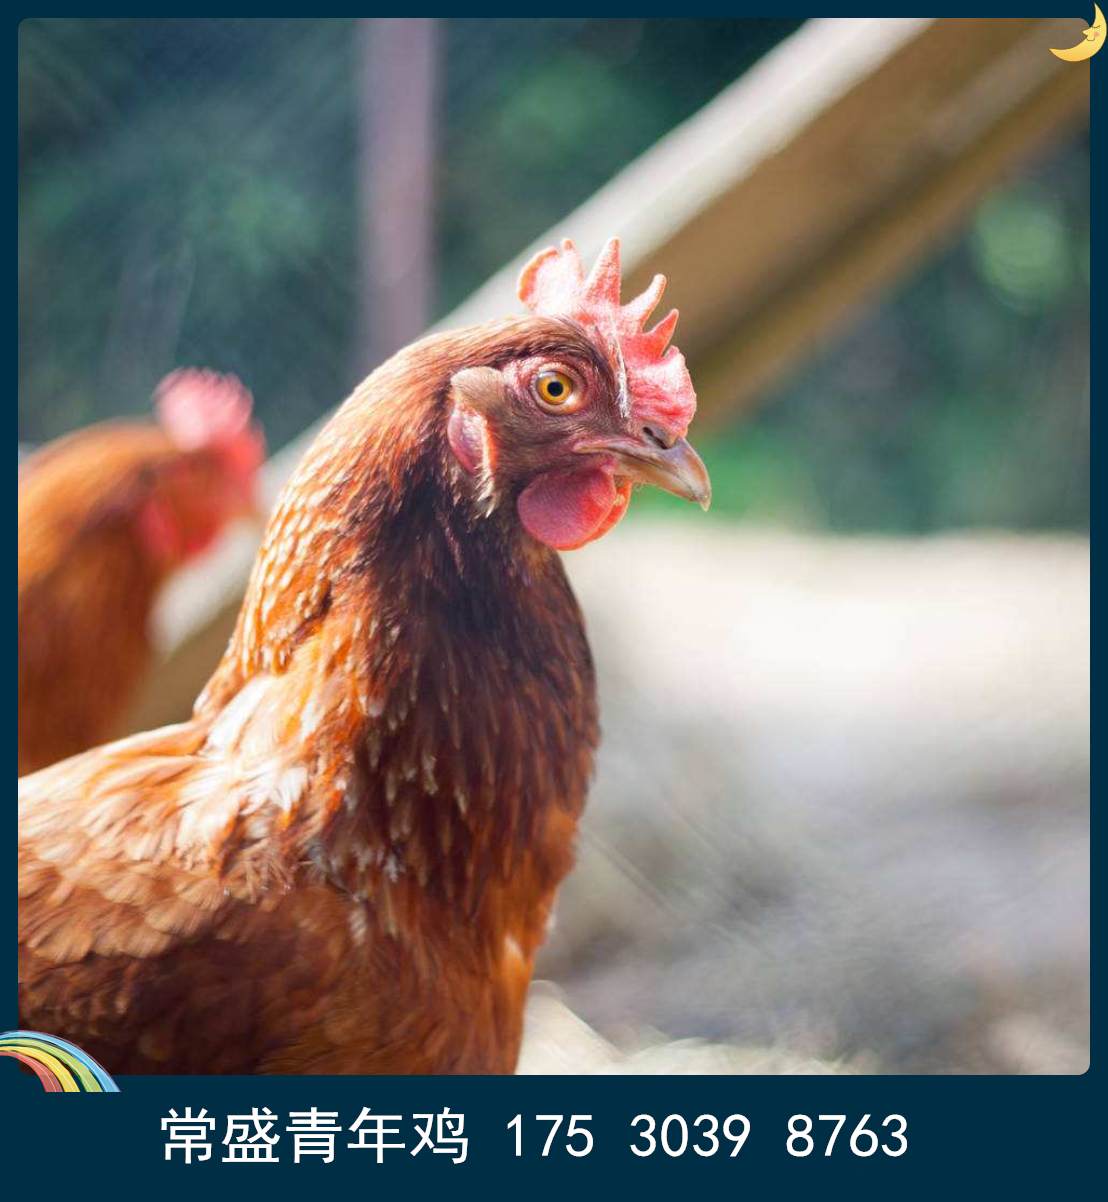 海兰褐蛋鸡青年鸡省料秘诀 动物种苗 亳州海兰褐蛋鸡青年鸡养殖必看6